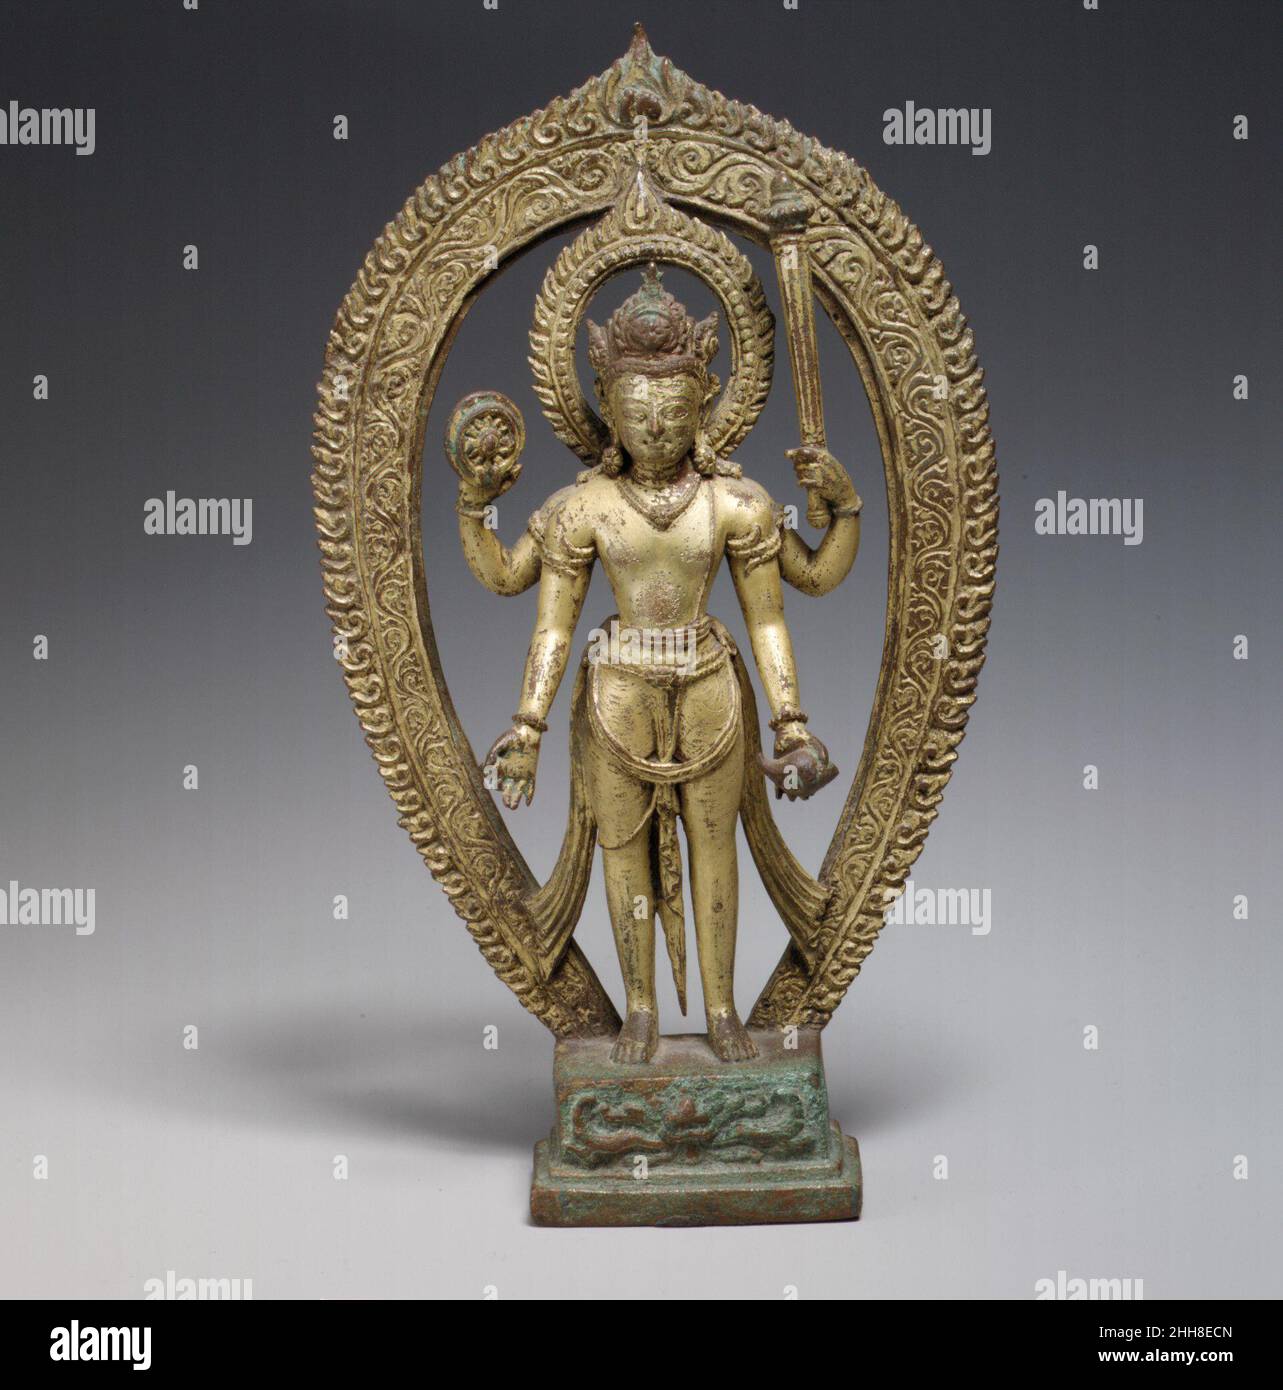 Vishnu 10th–11th Century Nepal (vallée de Katmandou) Vishnu en tant que protecteur et protecteur divin de l'ordre assume une posture symétrique, ses quatre bras s'contrebalancent l'un l'autre en affichant ses attributs titanes martiales : discus de guerre, club de bataille, et trompette de coquille de conch.Sa quatrième main tient la sphère qui décode la déesse de la terre.Il porte une couronne tripartite, le lobe central affichant un visage de lion, un héritage des conventions de Gupta nord-indiennes de l'imagerie royale.Vishnu.Népal (vallée de Katmandou).10th–11th siècle.Alliage de cuivre doré.Période Thakuri.Sculpture Banque D'Images